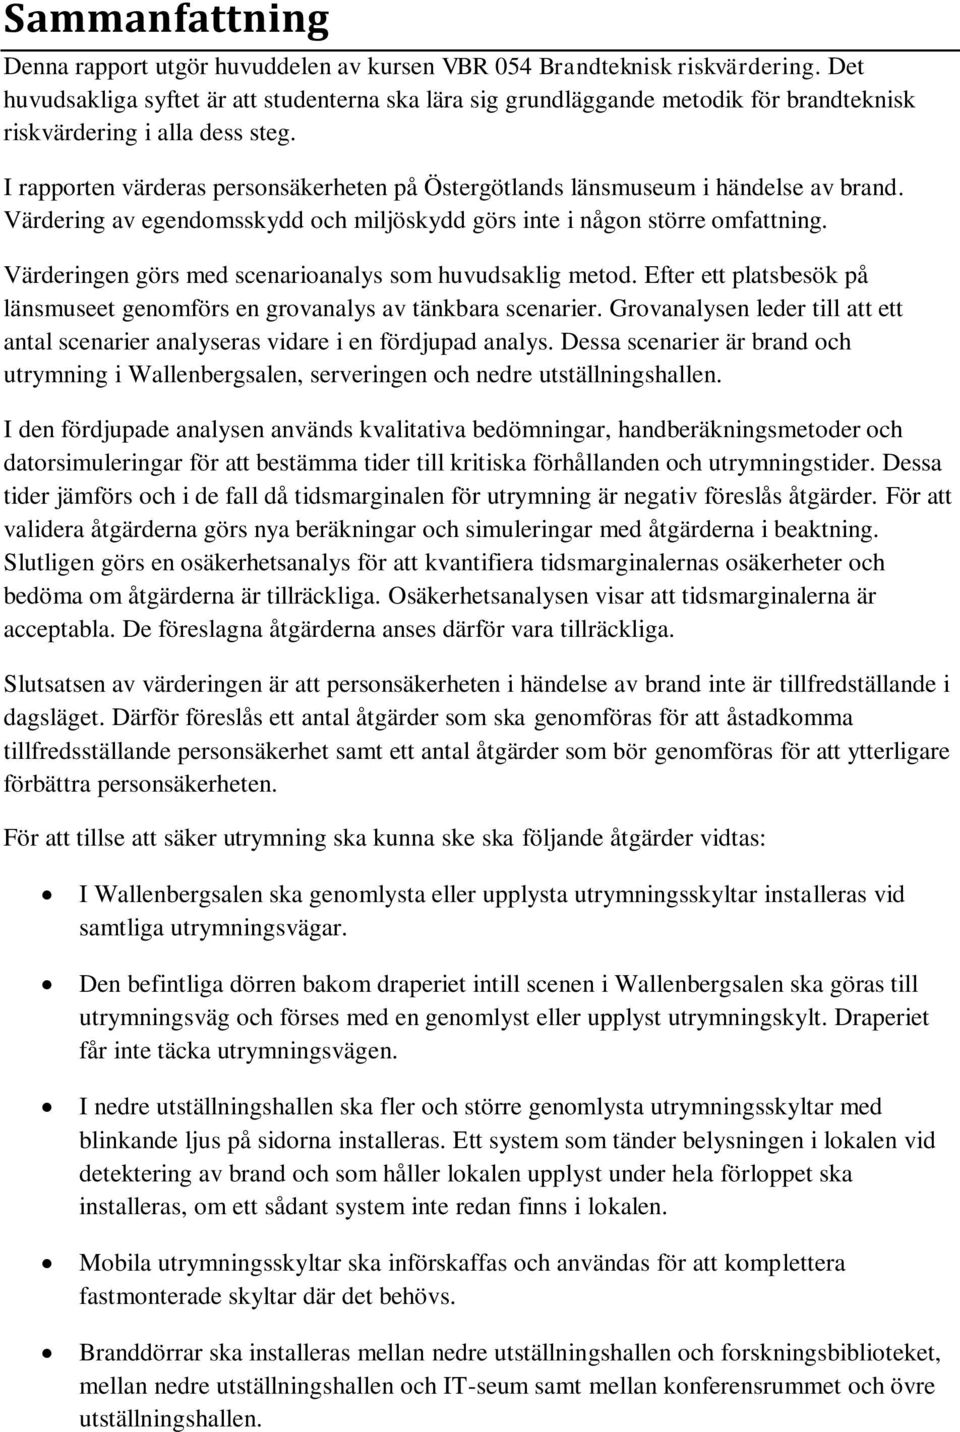 I rapporten värderas personsäkerheten på Östergötlands länsmuseum i händelse av brand. Värdering av egendomsskydd och miljöskydd görs inte i någon större omfattning.